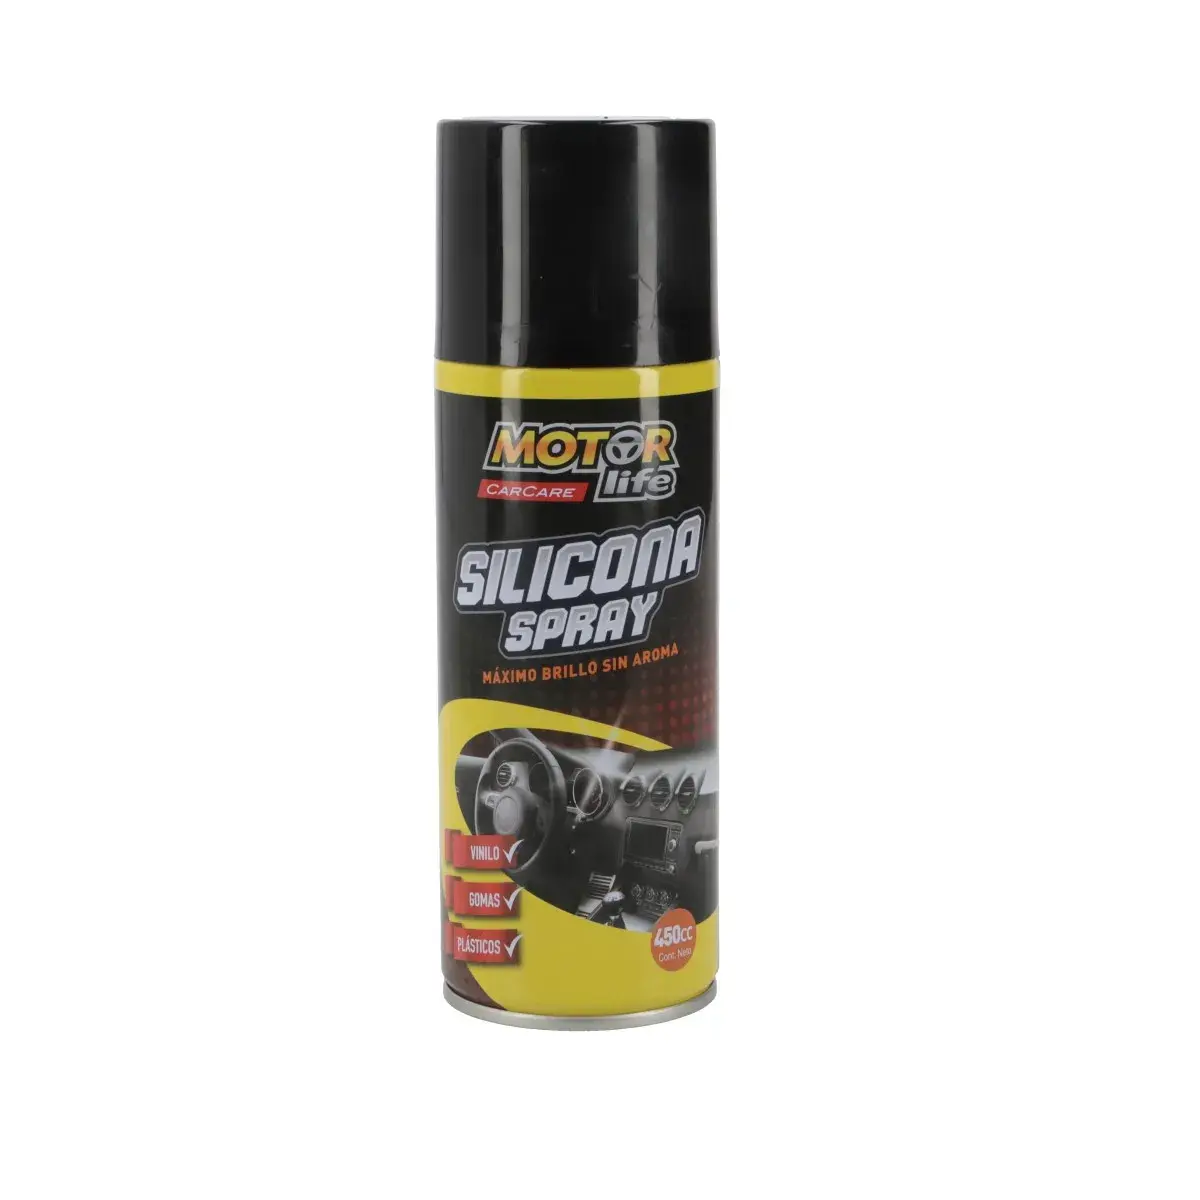 Silicona En Spray 450cc MOTORLIFE - BIOCAR TUNING